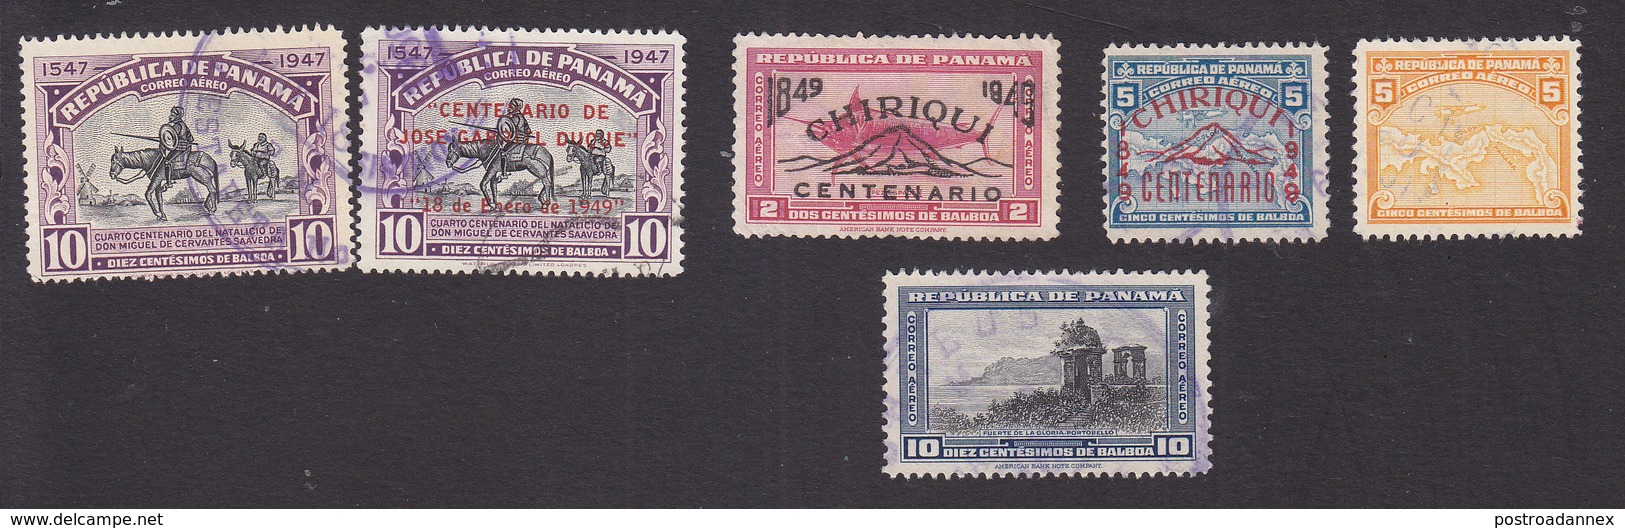 Panama, Scott #C106-C109, C112-C113, Used, Cervantes, Regular Issues Overprinted, Map, Gate, Issued 1948-49 - Panama